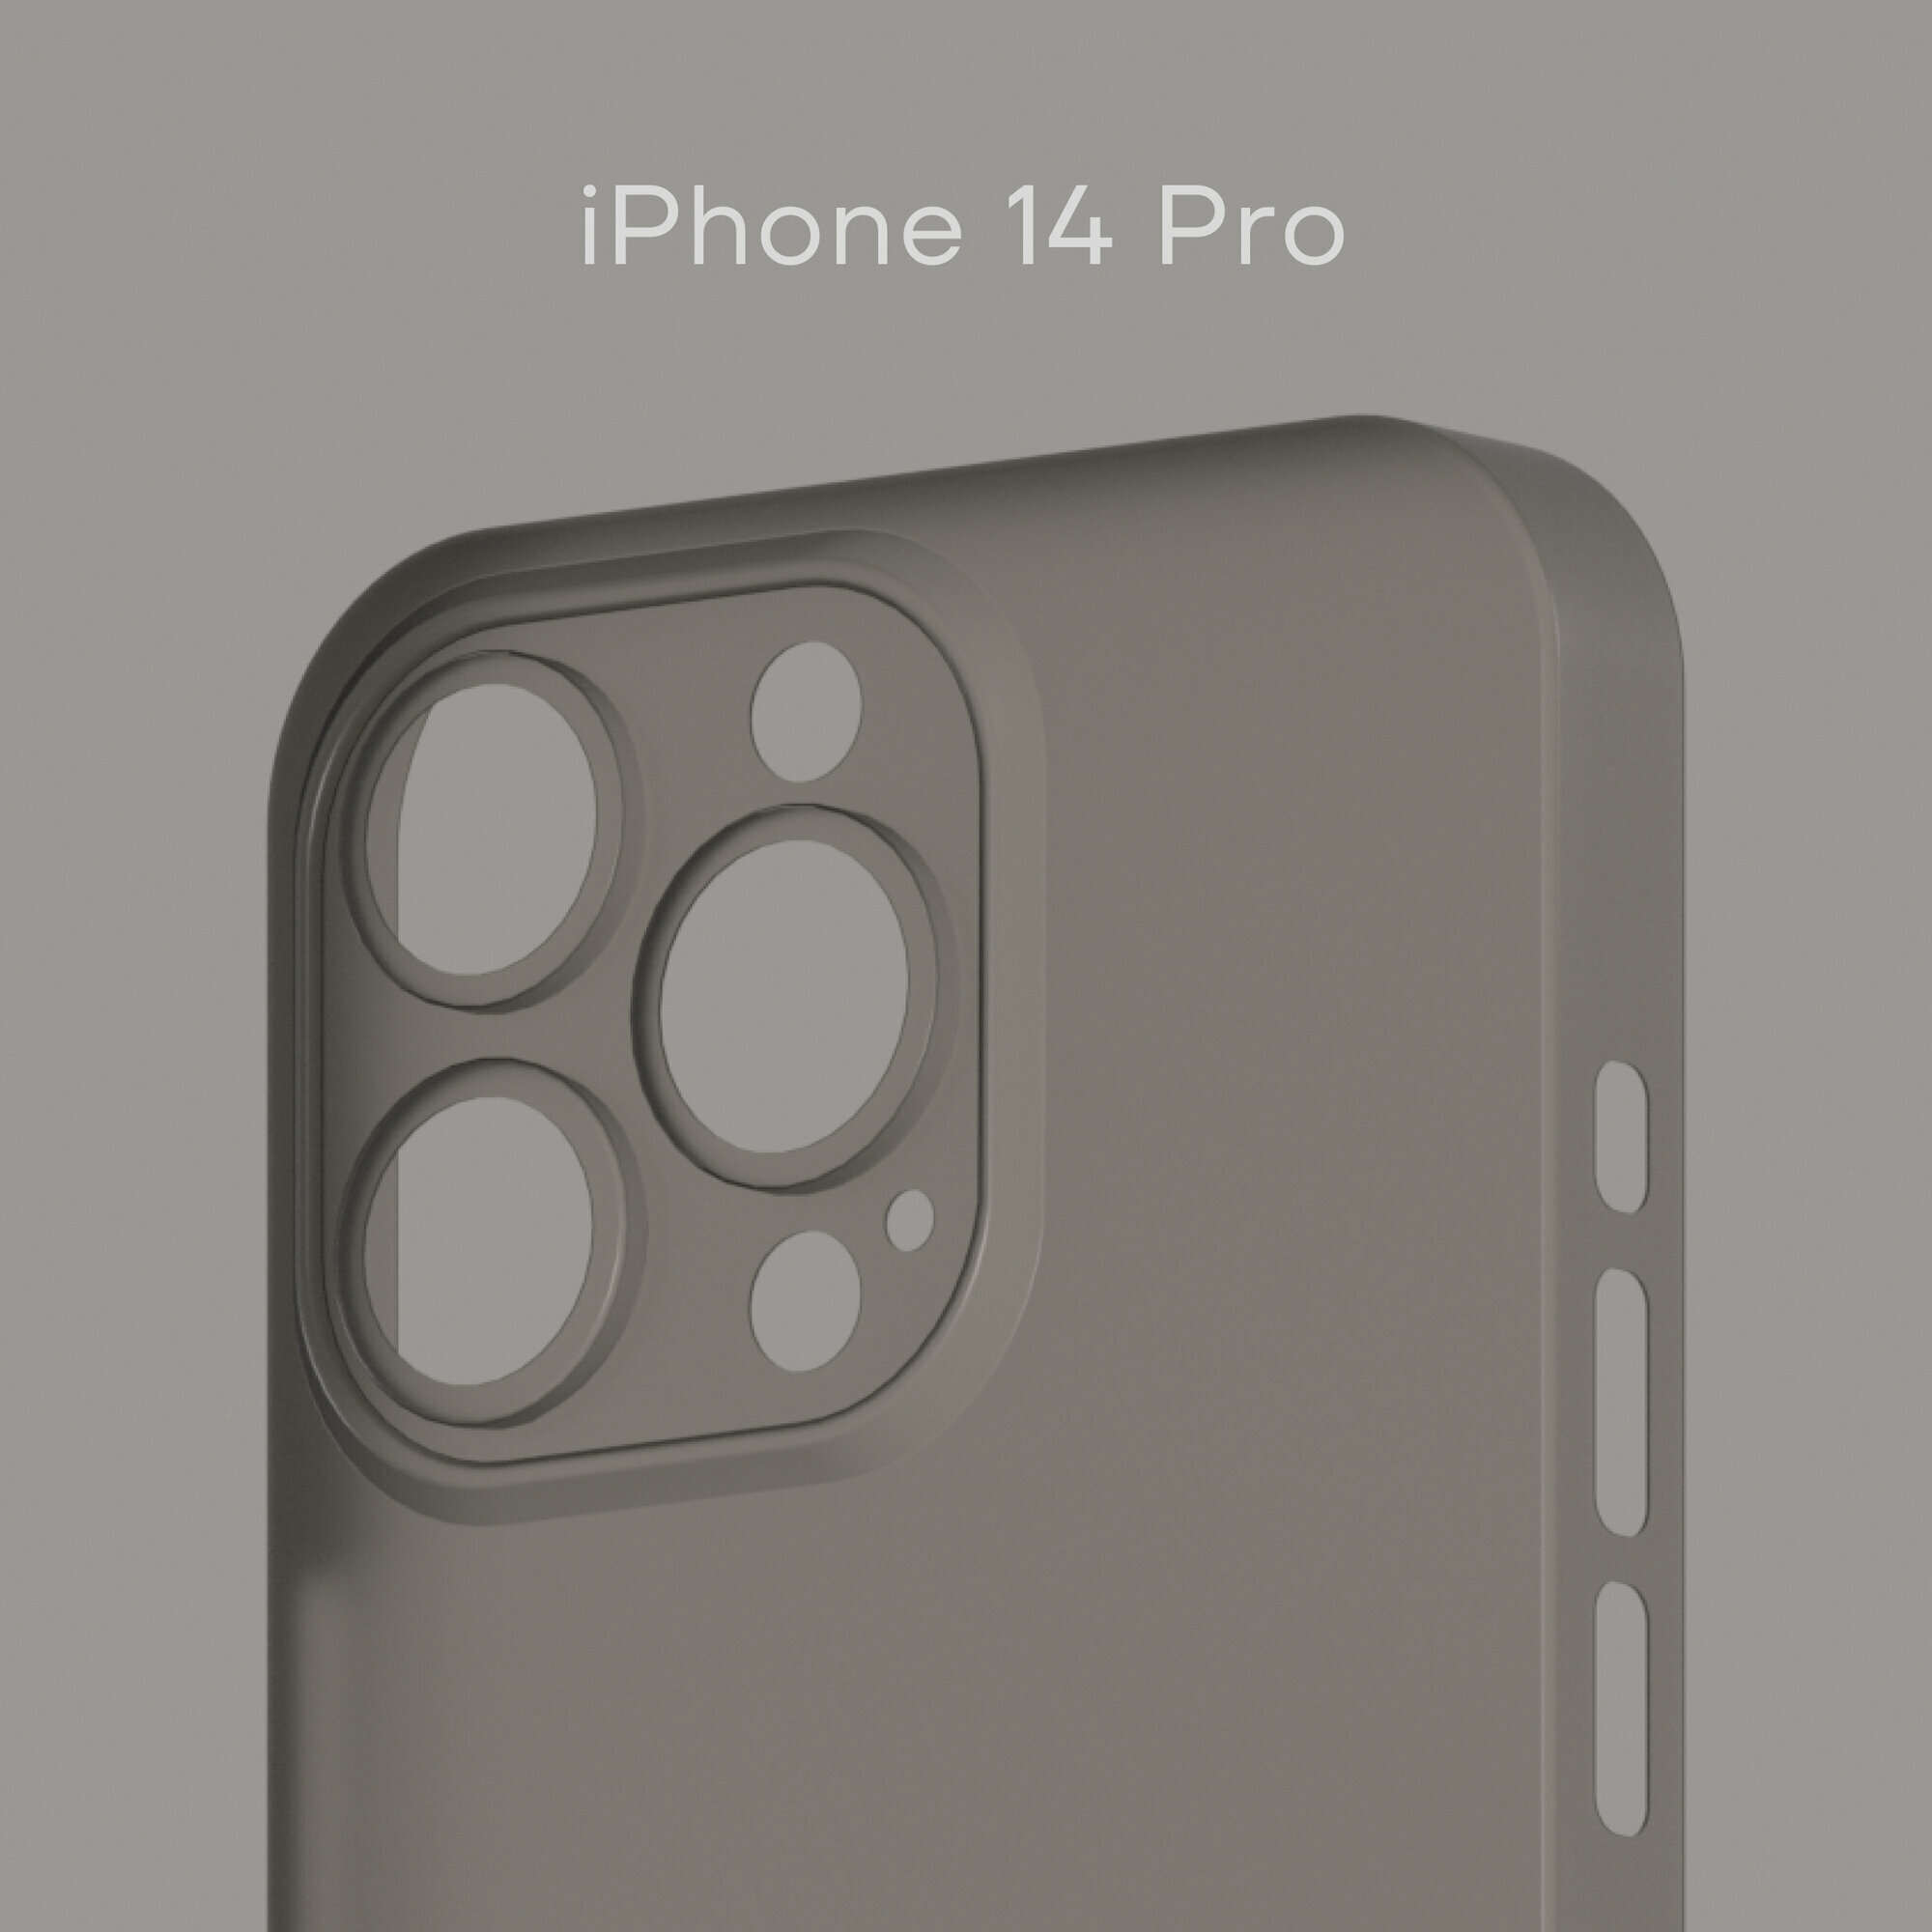 Ультратонкий чехол Уголок Air Case для iPhone 14 Pro толщиной 0,3 мм, прозрачный, матовый, пластиковый